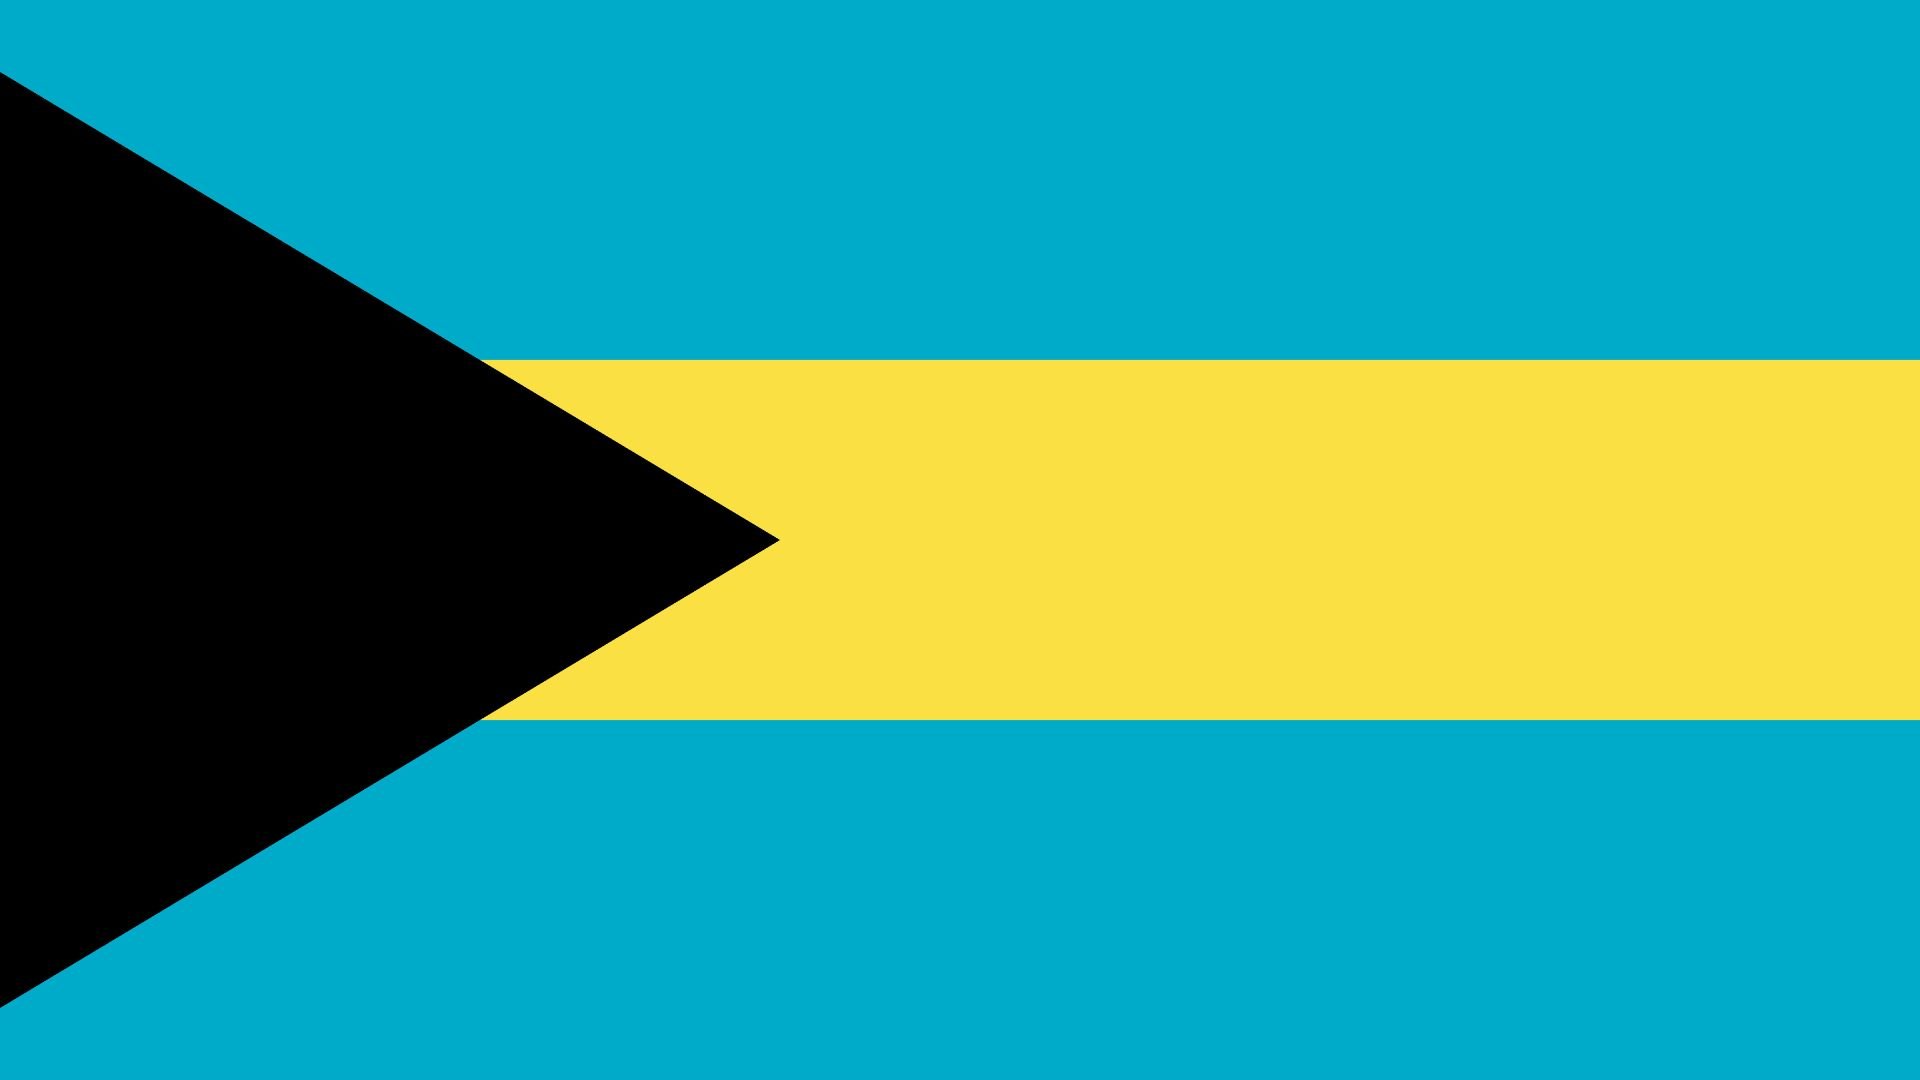 A bandeira nacional das Bahamas consiste de três faixas horizontais, de azul celeste, amarelo e azul celeste, que representam as areias da nação e as águas que a rodeiam.